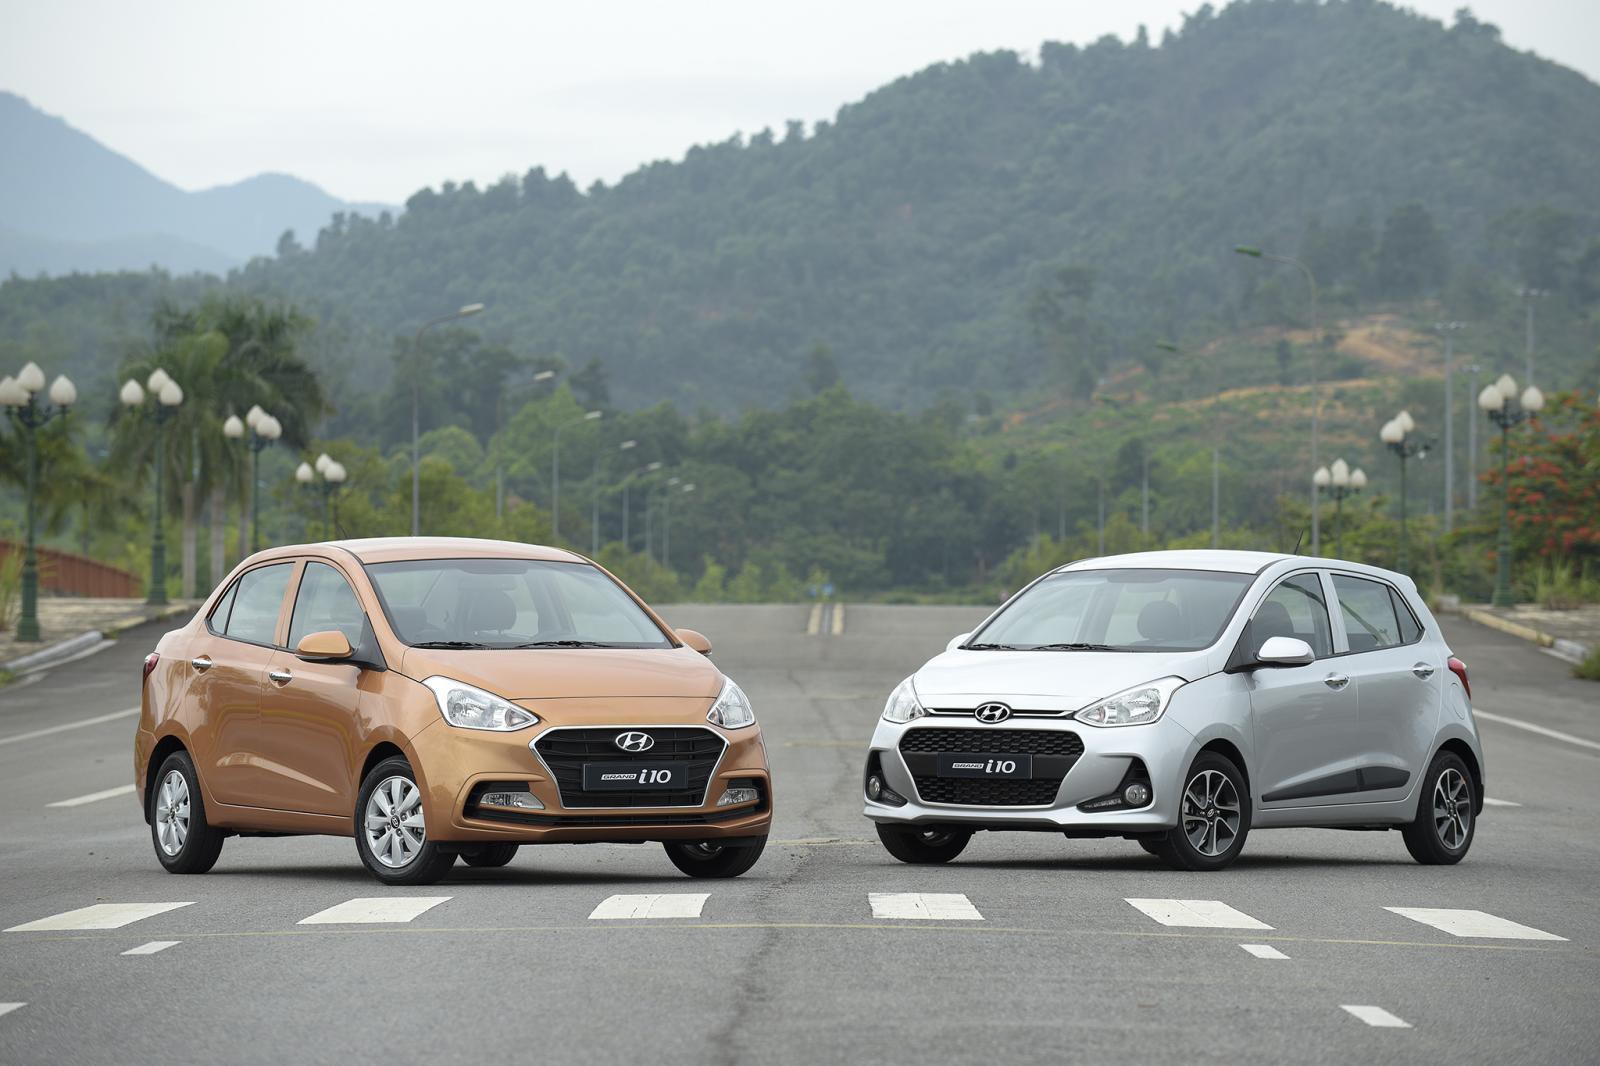 Doanh số xe Hyundai tháng 8/2019 giảm nhẹ so với tháng trước, Grand i10 dẫn đầu bảng 1a